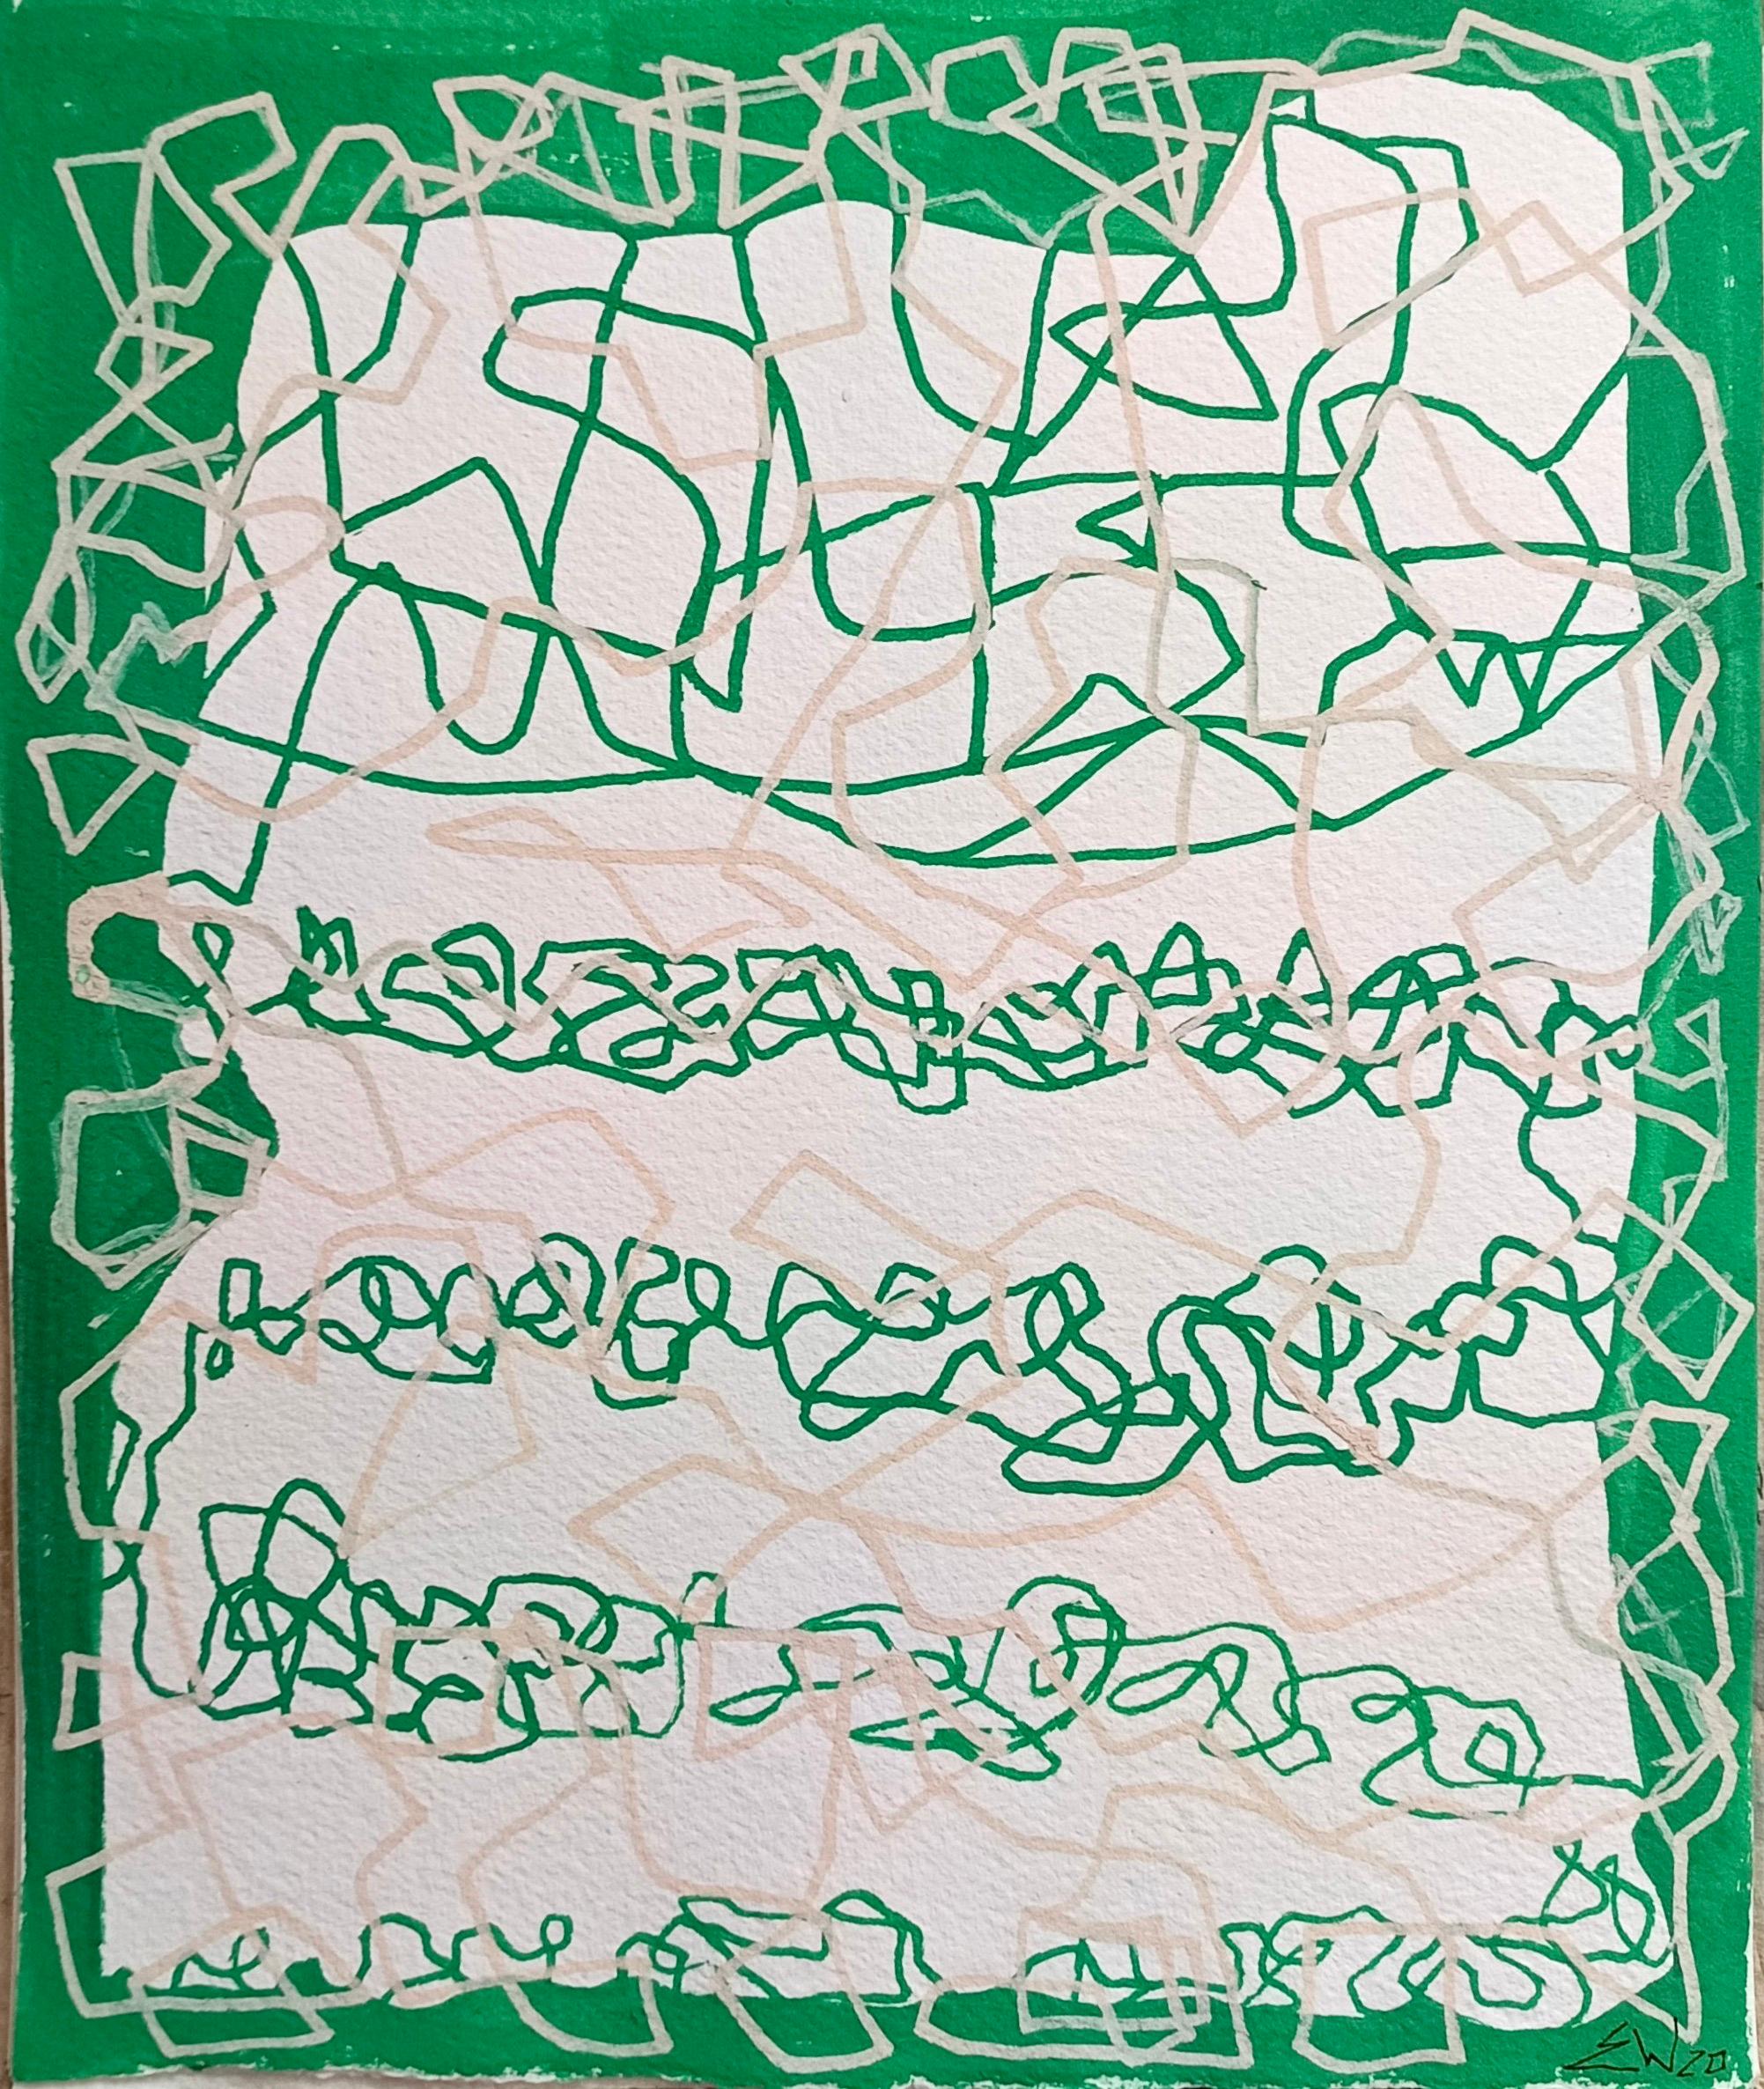 « Tracciati » d'E. Wenk, 2020, peinture acrylique verte, lignes abstraites, graffiti